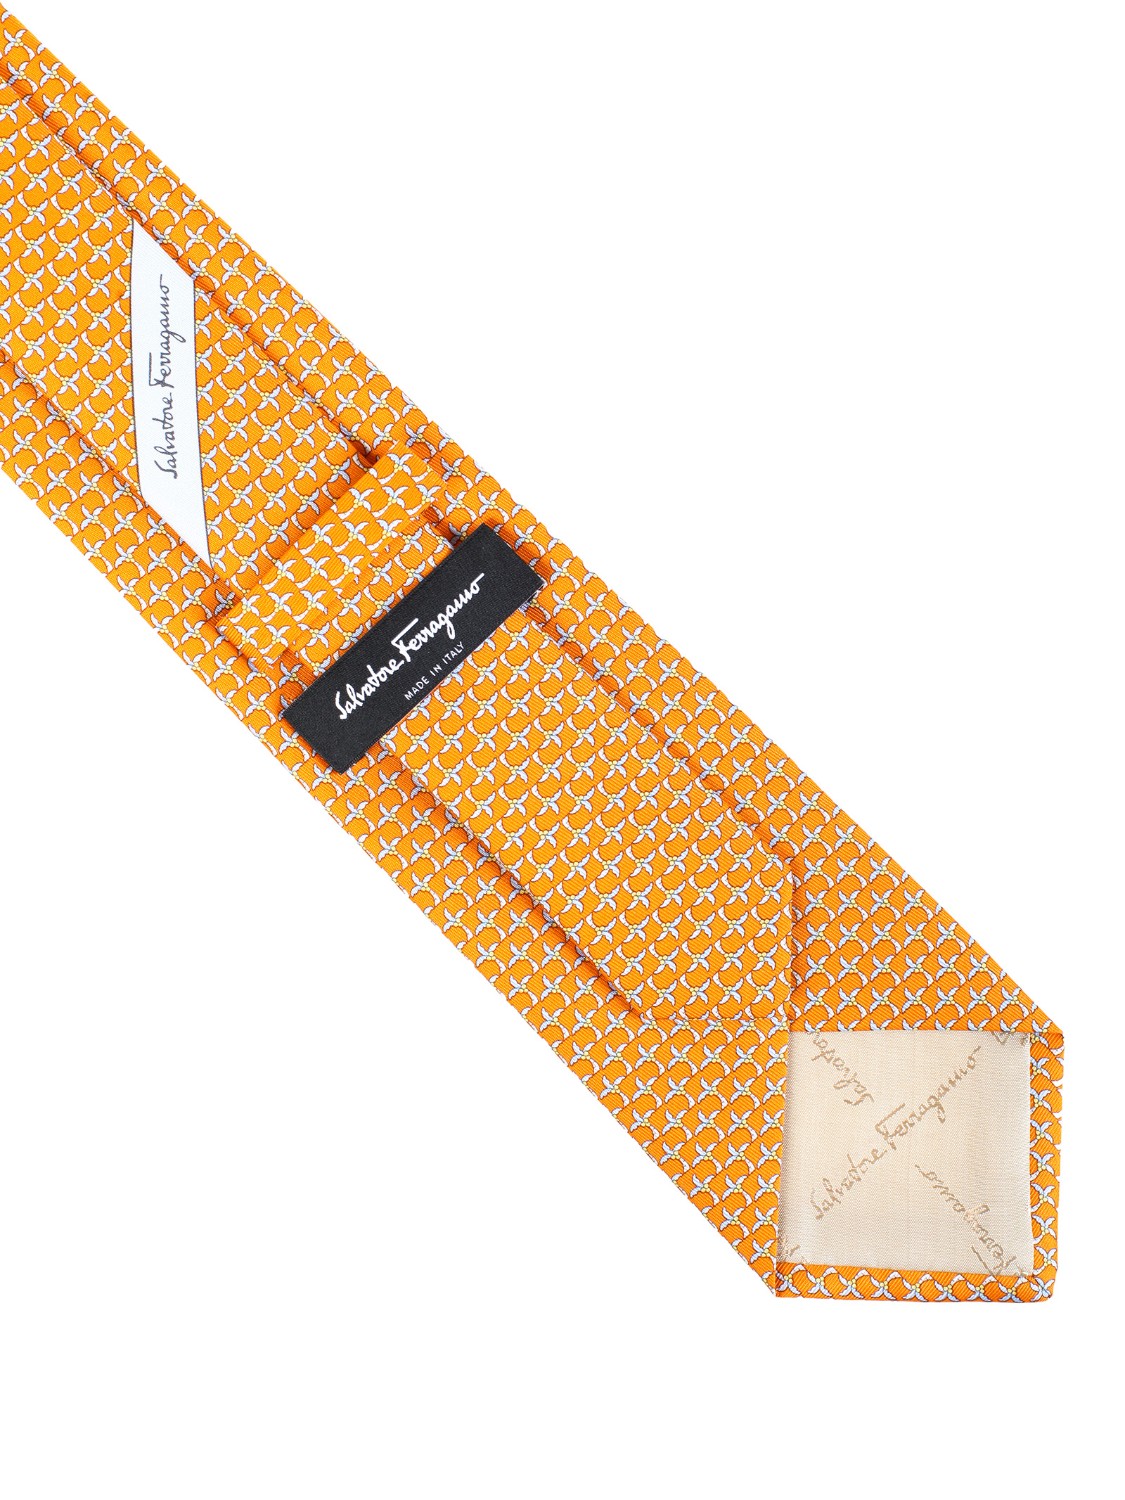 shop SALVATORE FERRAGAMO  Cravatta: Salvatore Ferragamo cravatta in seta con stampa Palme.
Composizione: 100% seta.
Made in Italy.. 357873 GOCCO-006 703052 number 9345990